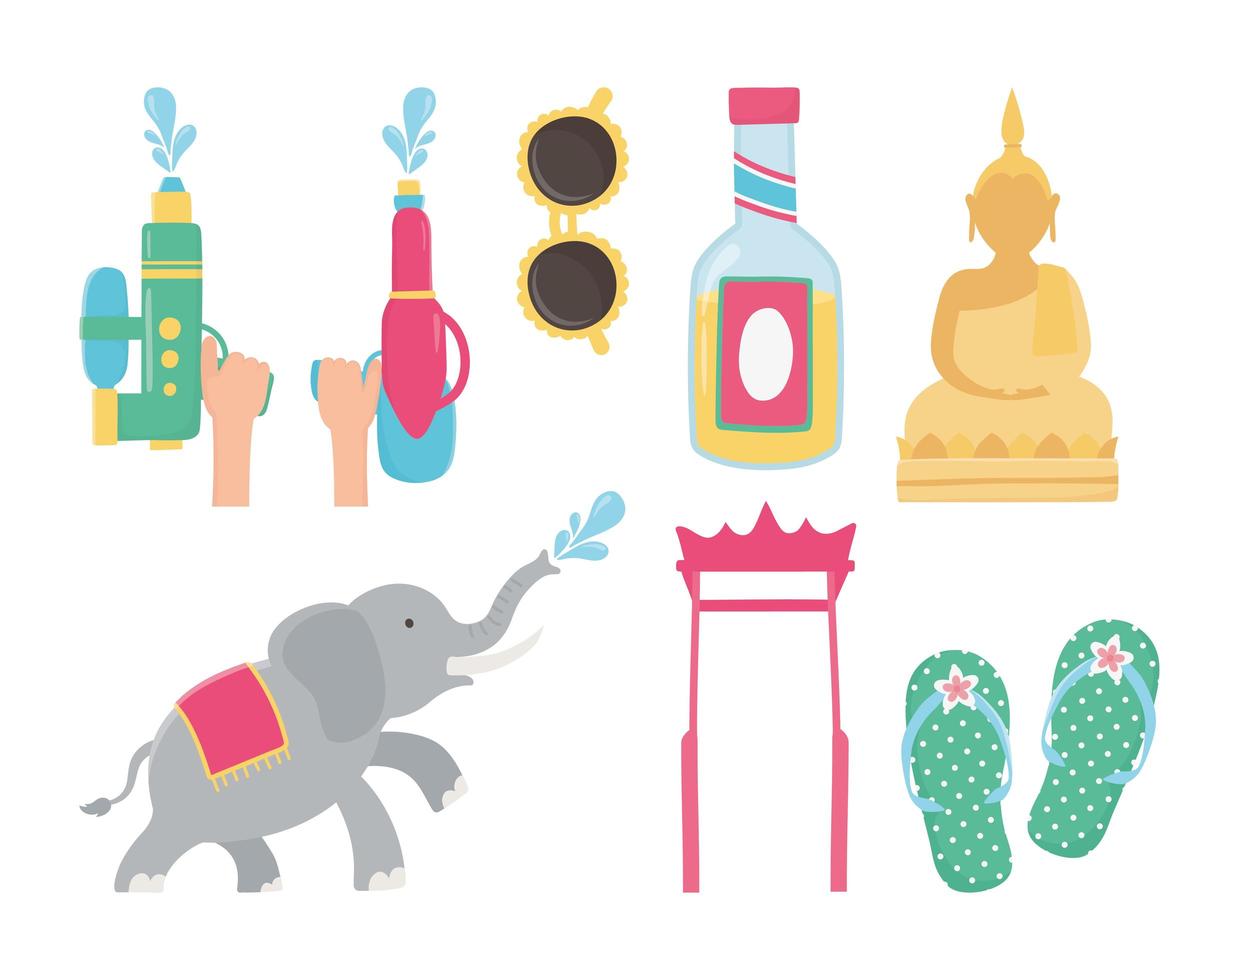 Songkran Festival celebration icon set vector